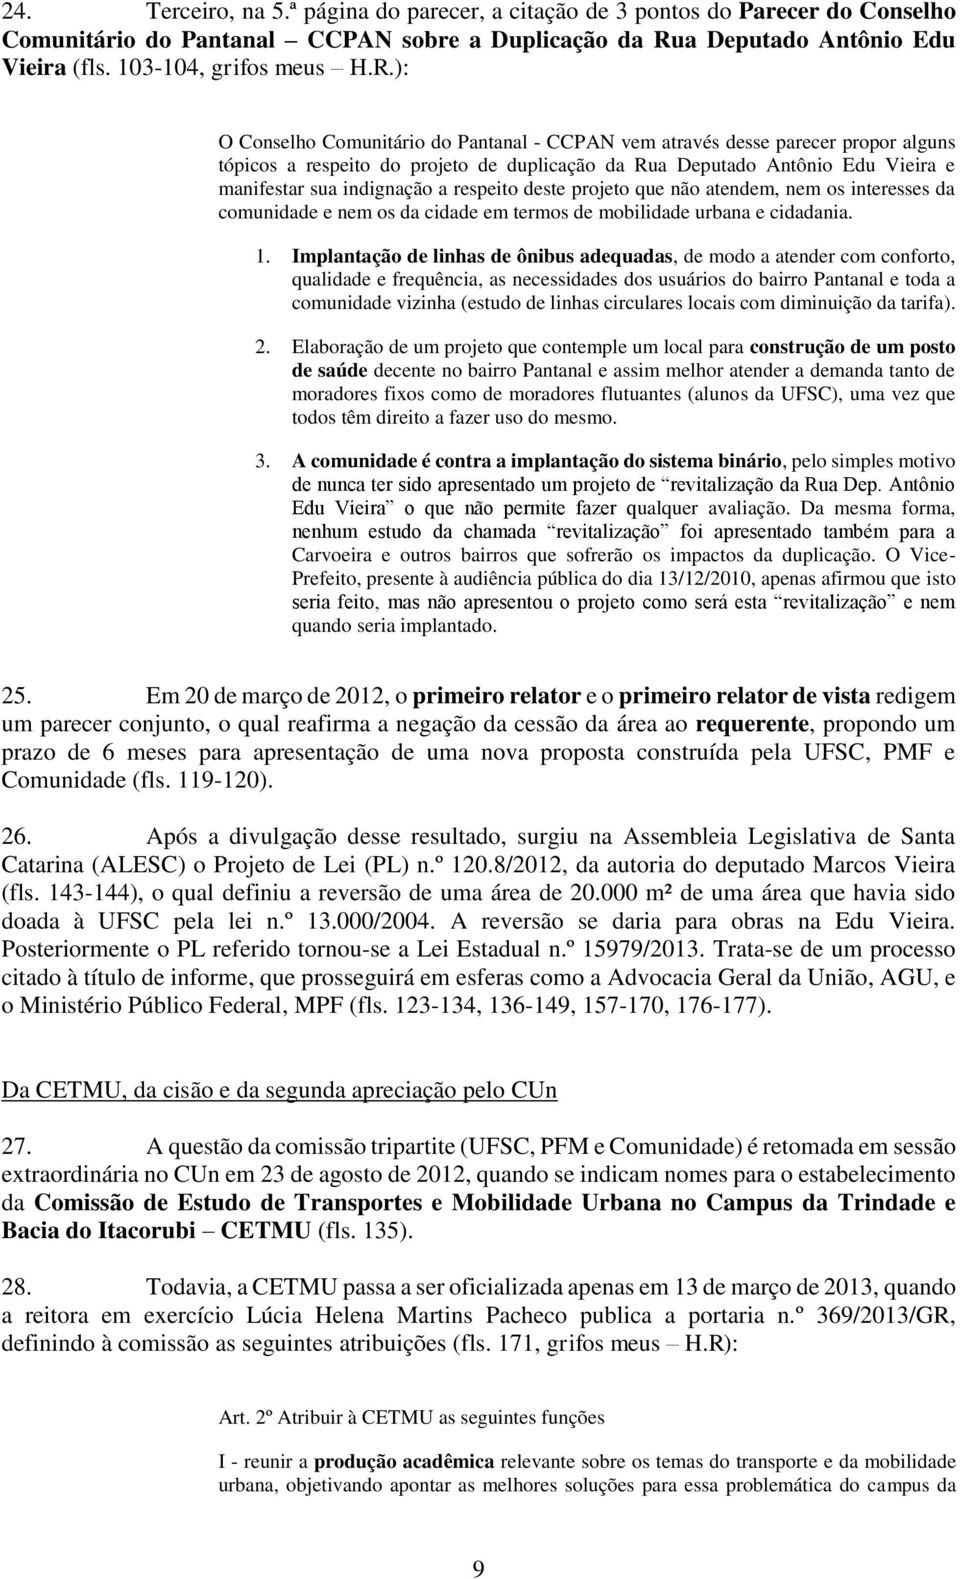 ): O Conselho Comunitário do Pantanal - CCPAN vem através desse parecer propor alguns tópicos a respeito do projeto de duplicação da Rua Deputado Antônio Edu Vieira e manifestar sua indignação a